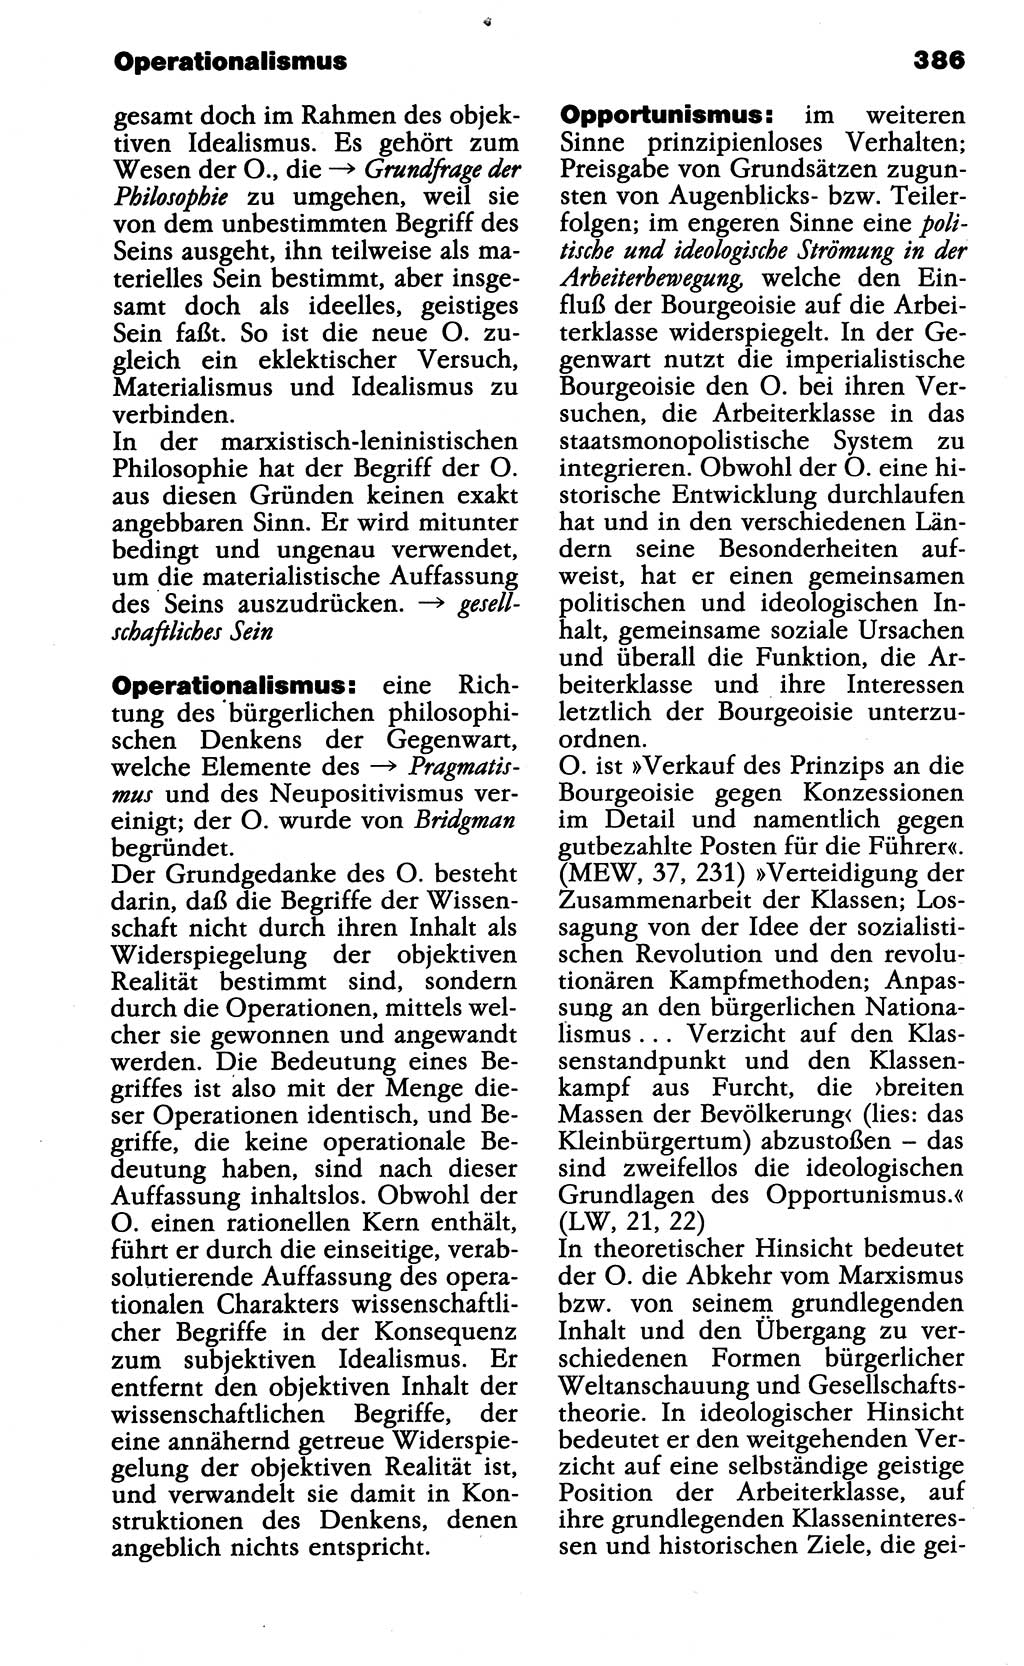 Wörterbuch der marxistisch-leninistischen Philosophie [Deutsche Demokratische Republik (DDR)] 1985, Seite 386 (Wb. ML Phil. DDR 1985, S. 386)